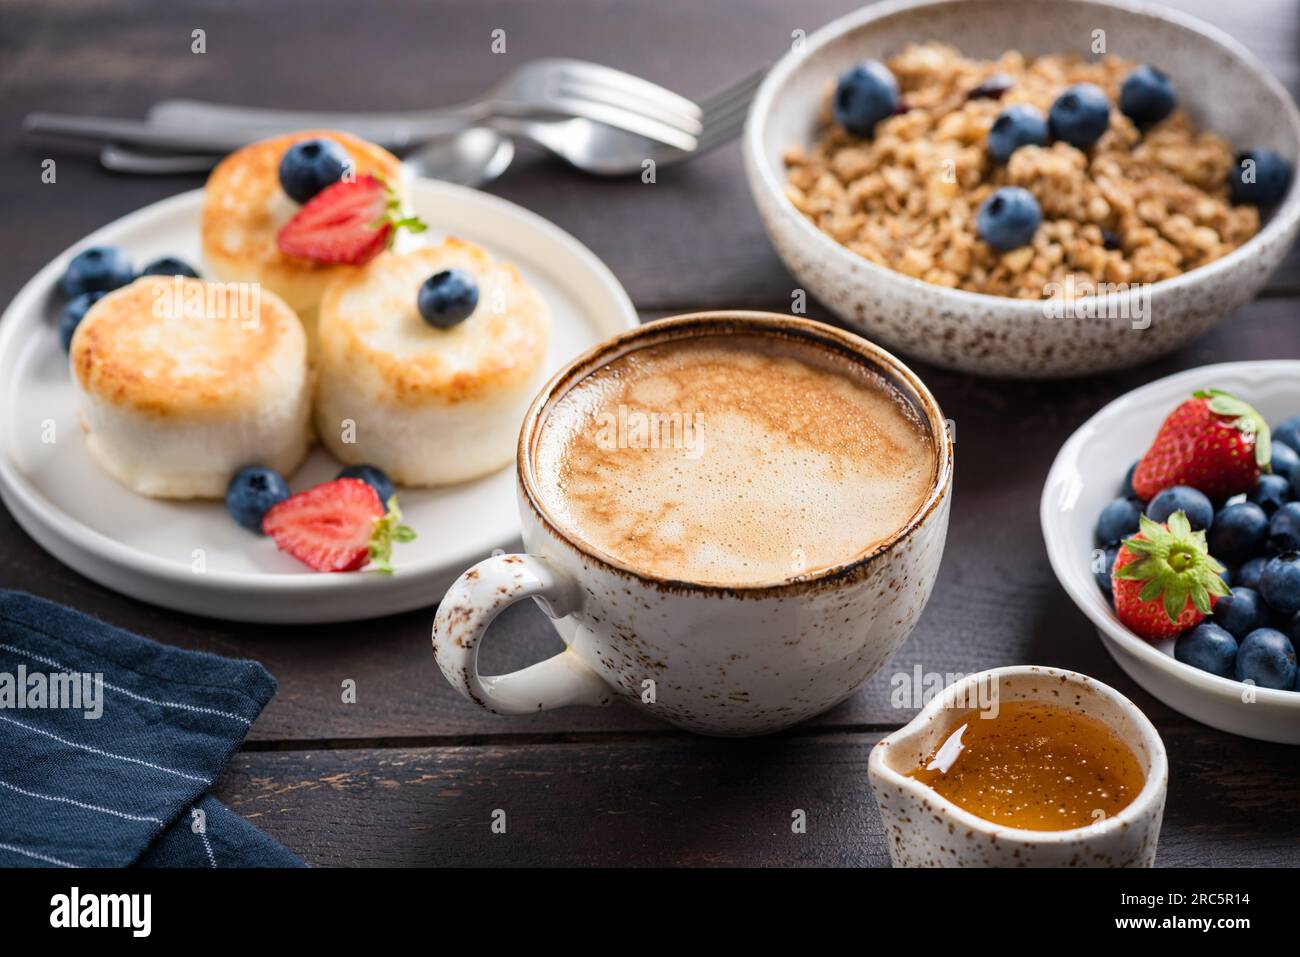 Cappuccino al caffè, frittelle al formaggio e muesli per colazione. Vista ravvicinata Foto Stock